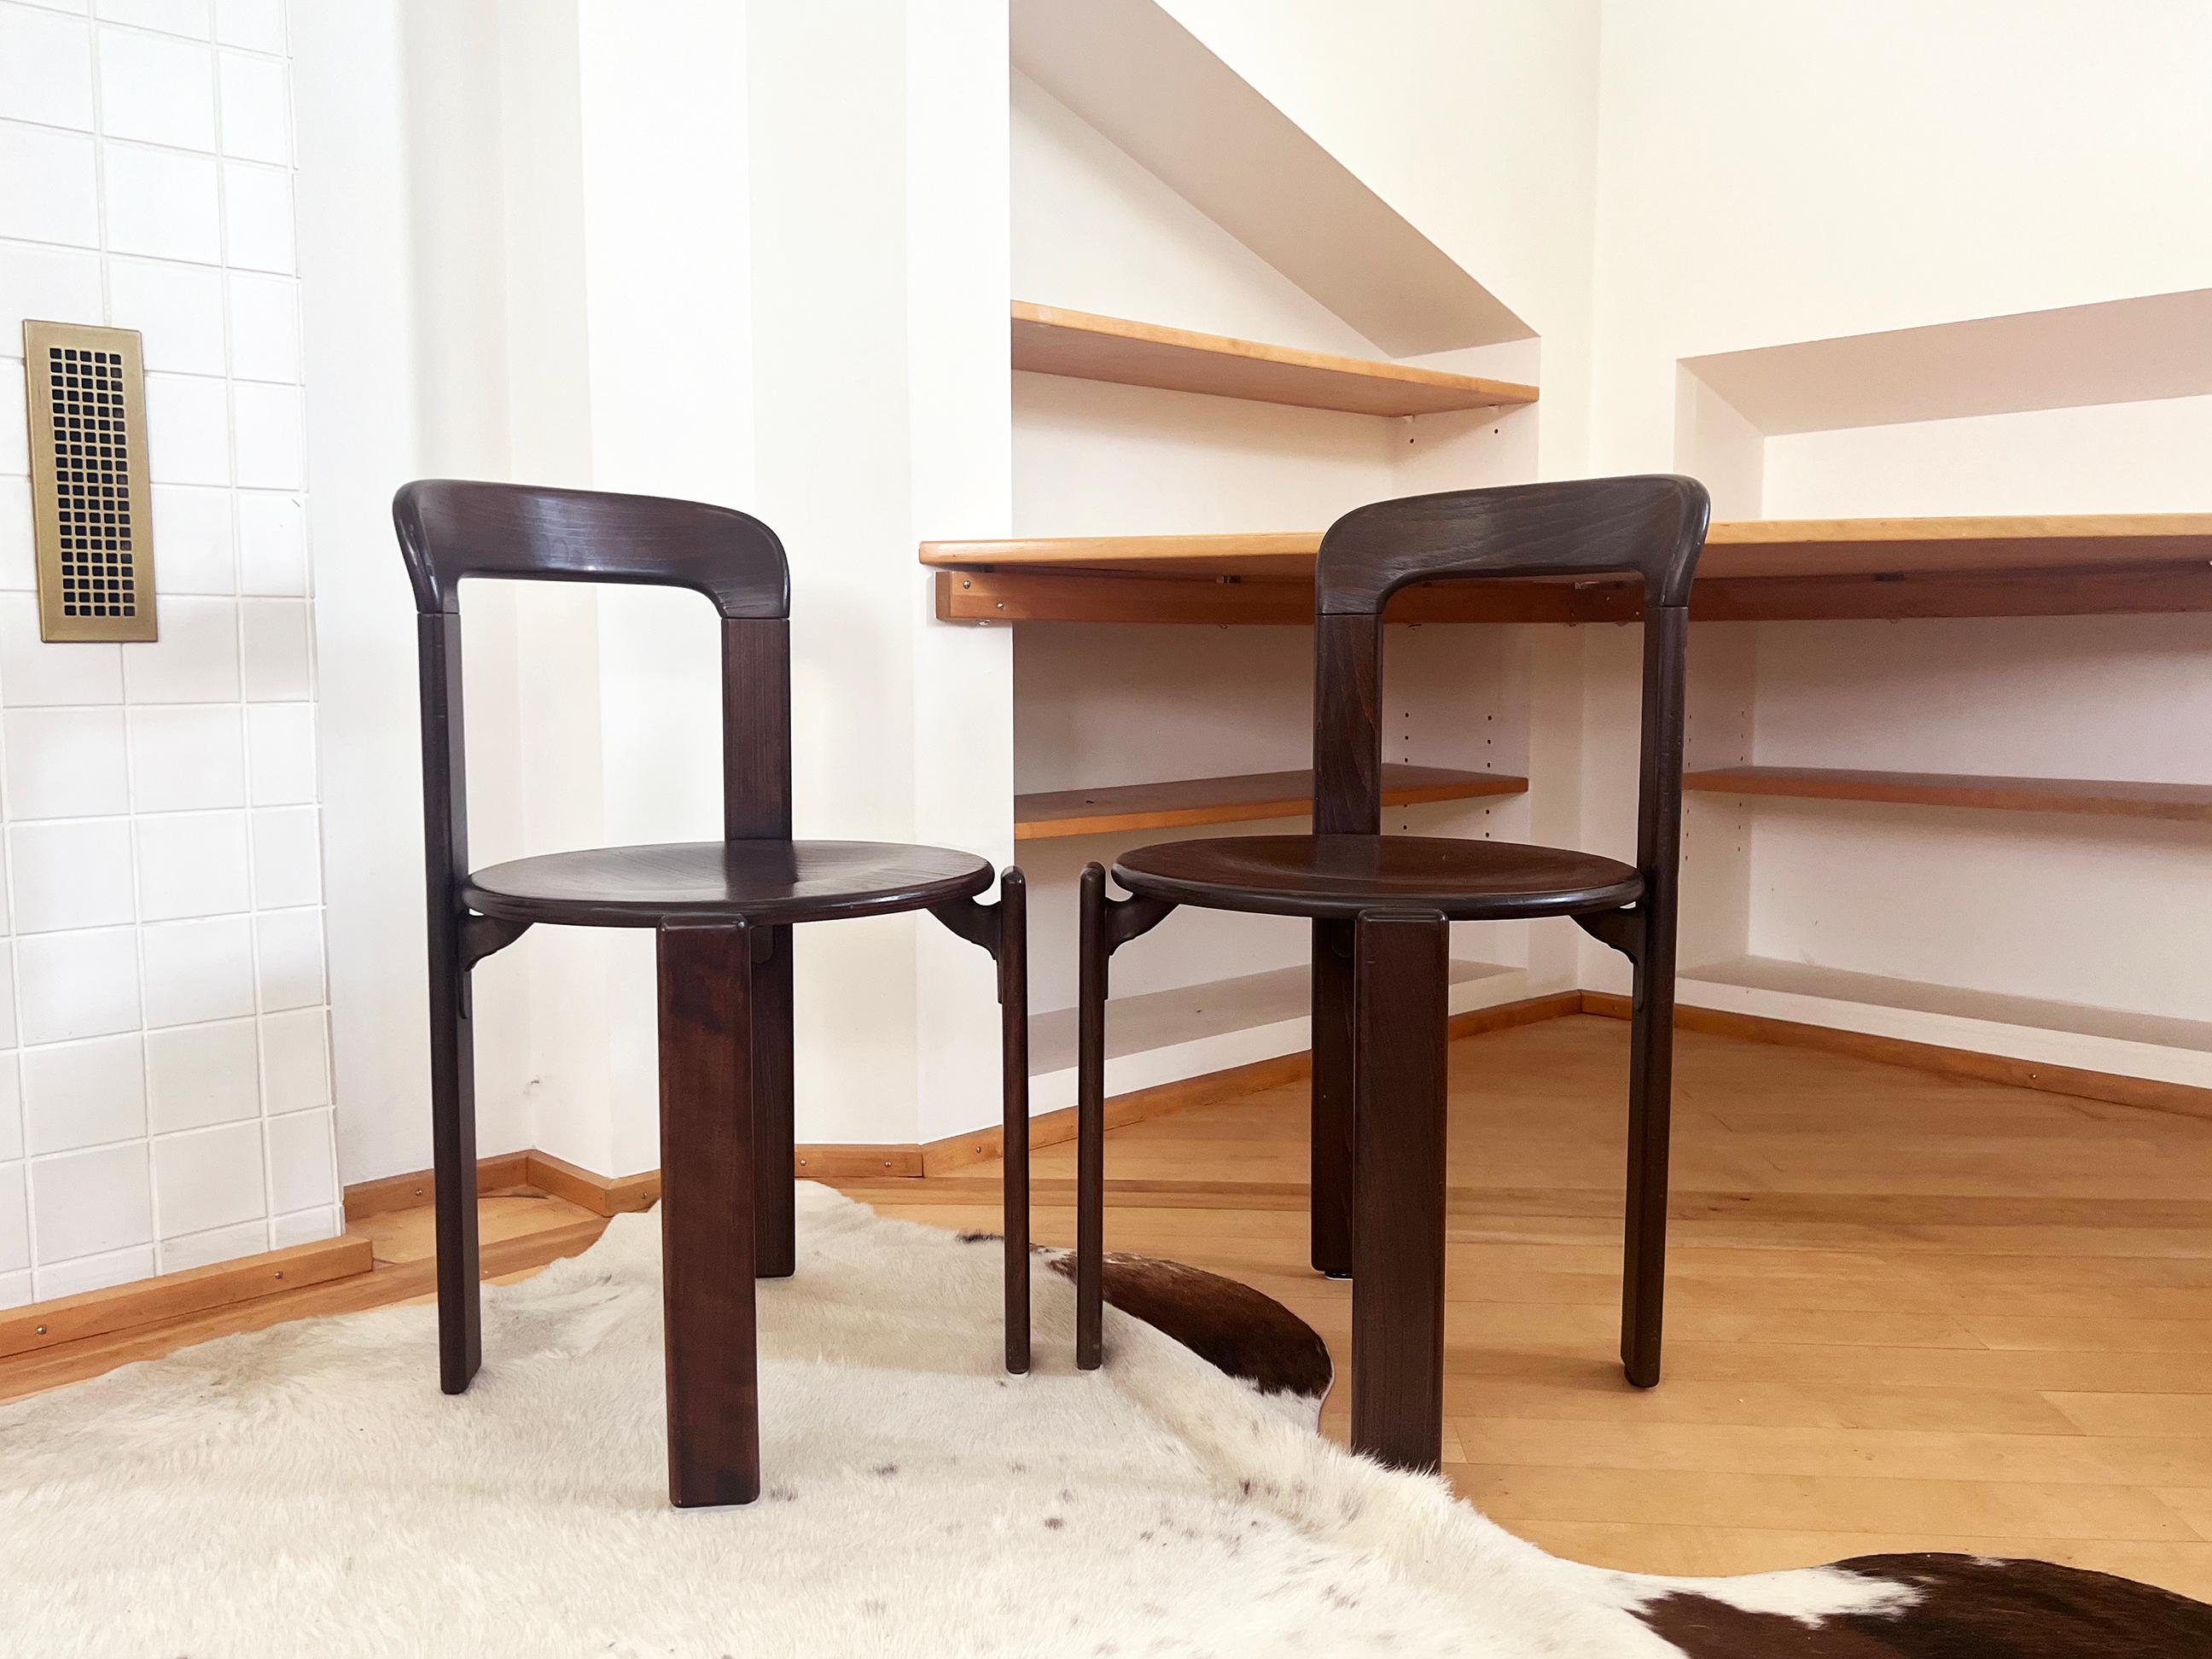 70s Postmodern Solid Dark Wood Dining Chairs Bruno Rey for Dietiker Switzerland 1